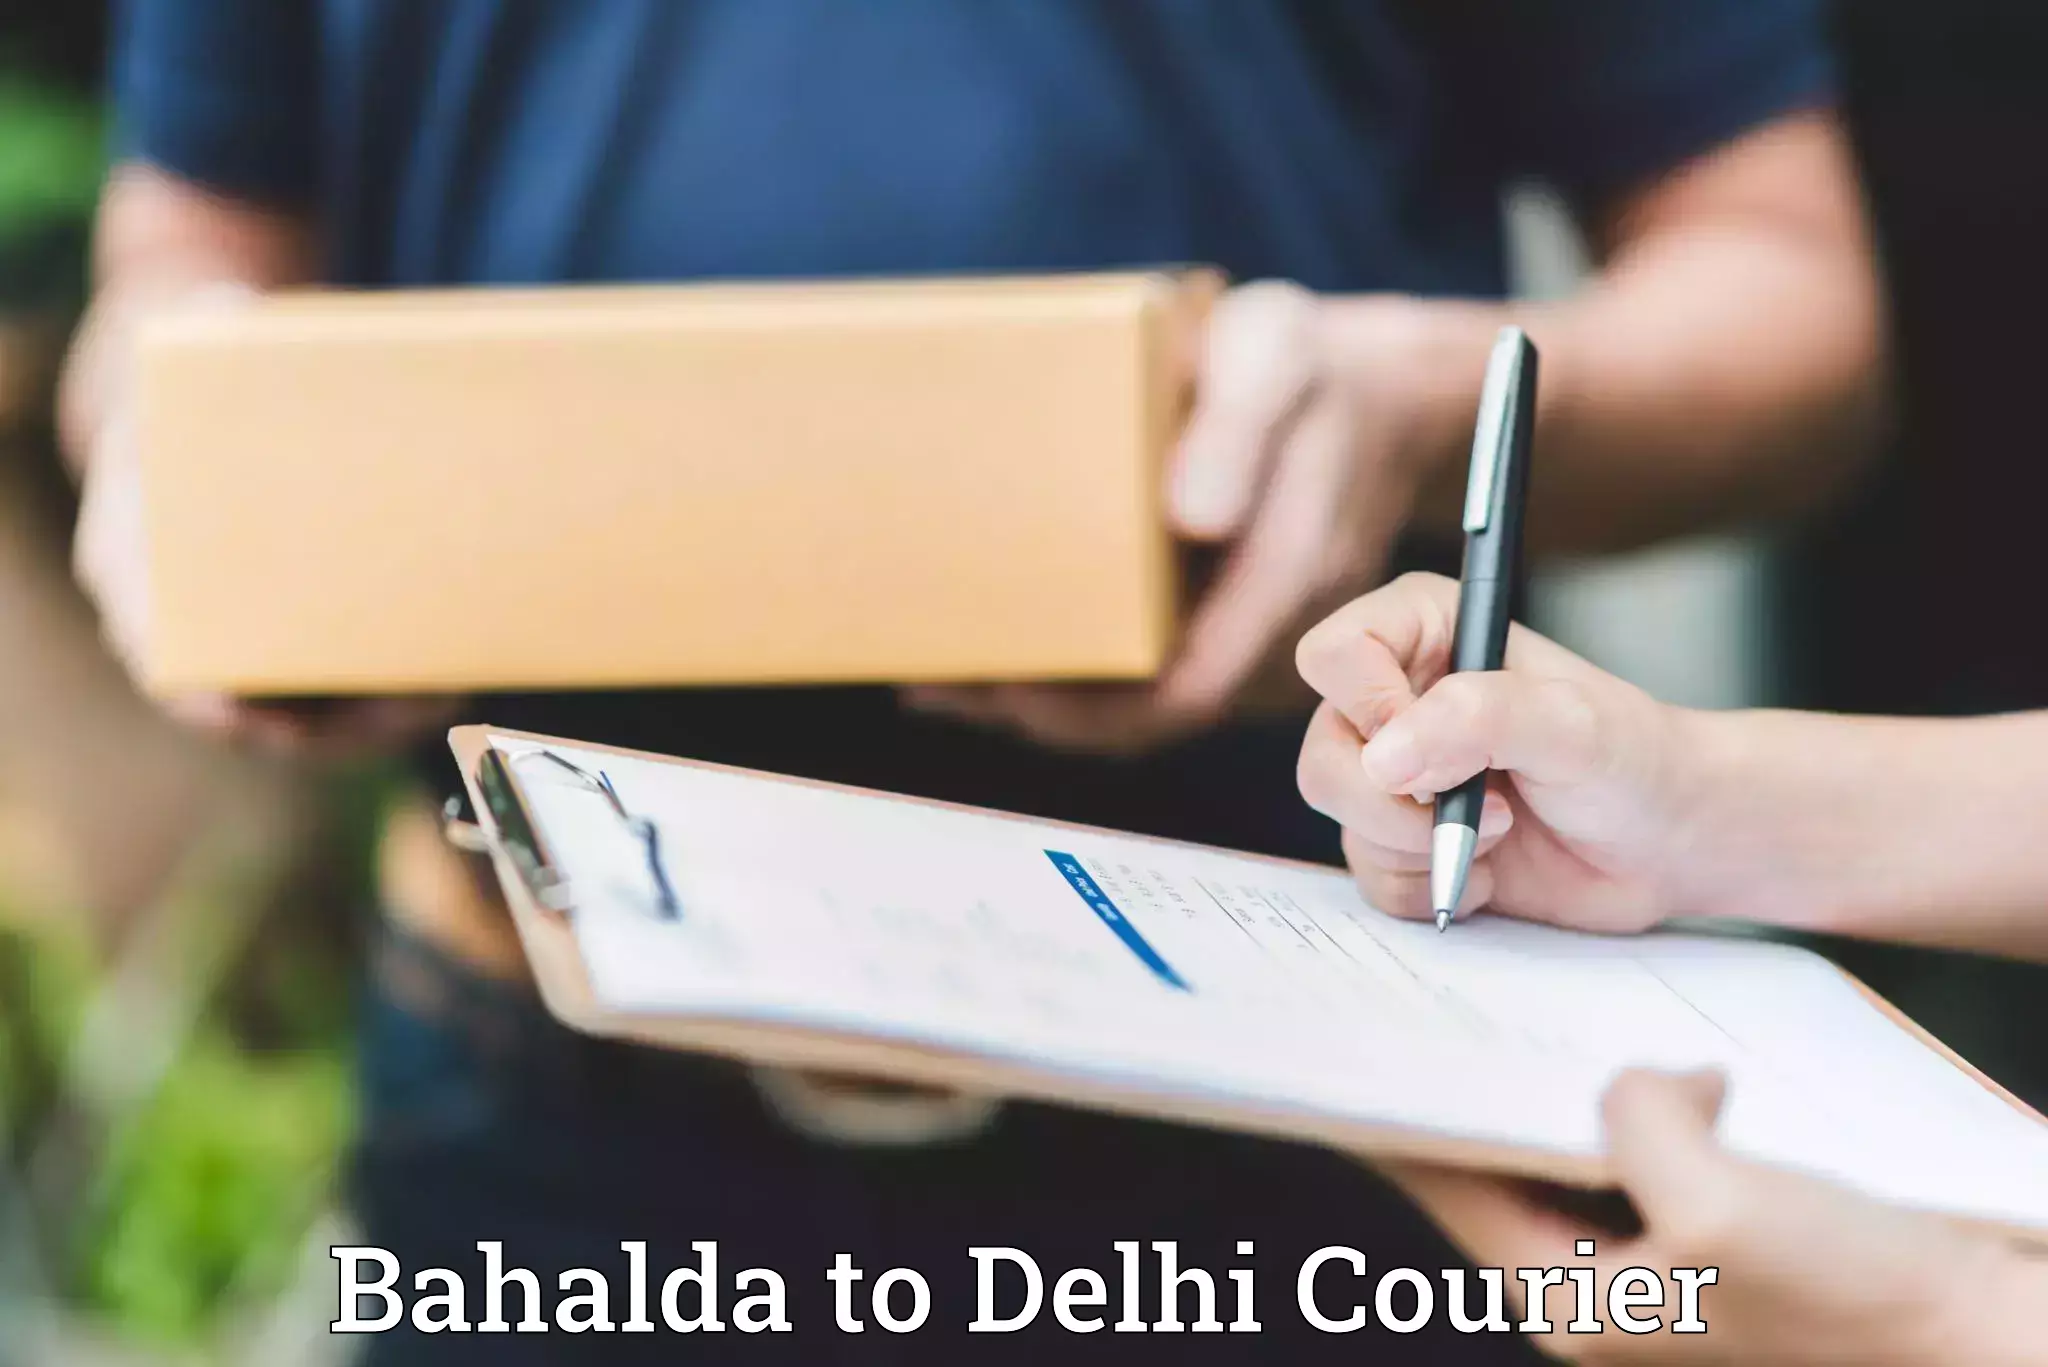 Furniture transport experts Bahalda to Delhi